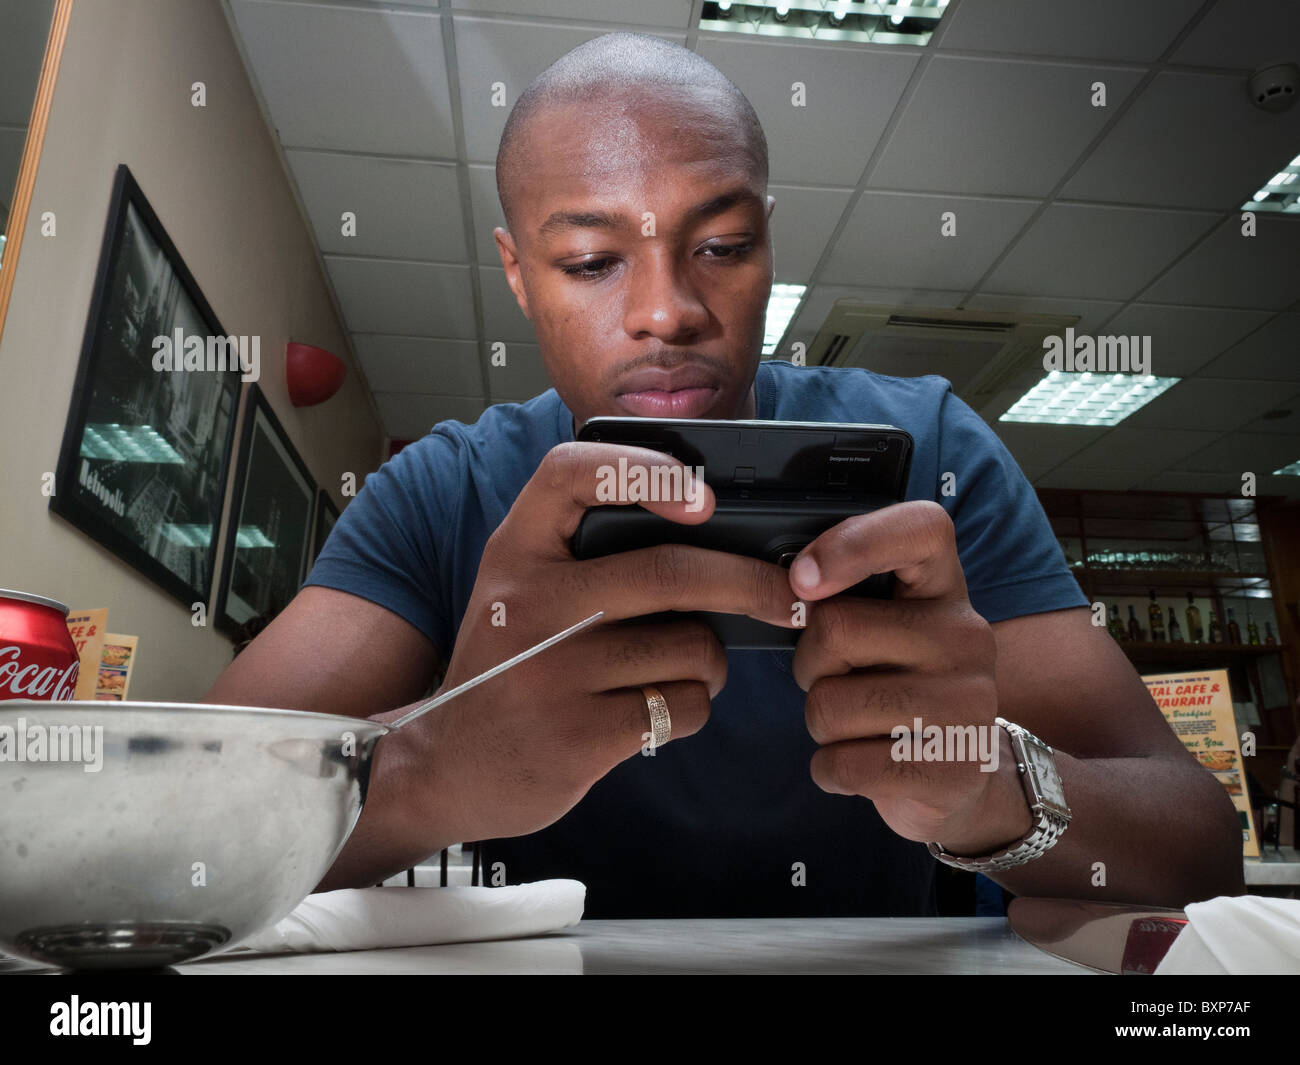 L'uomo la lettura di notizie su internet su una smart un cellulare in un ristorante fast food Foto Stock